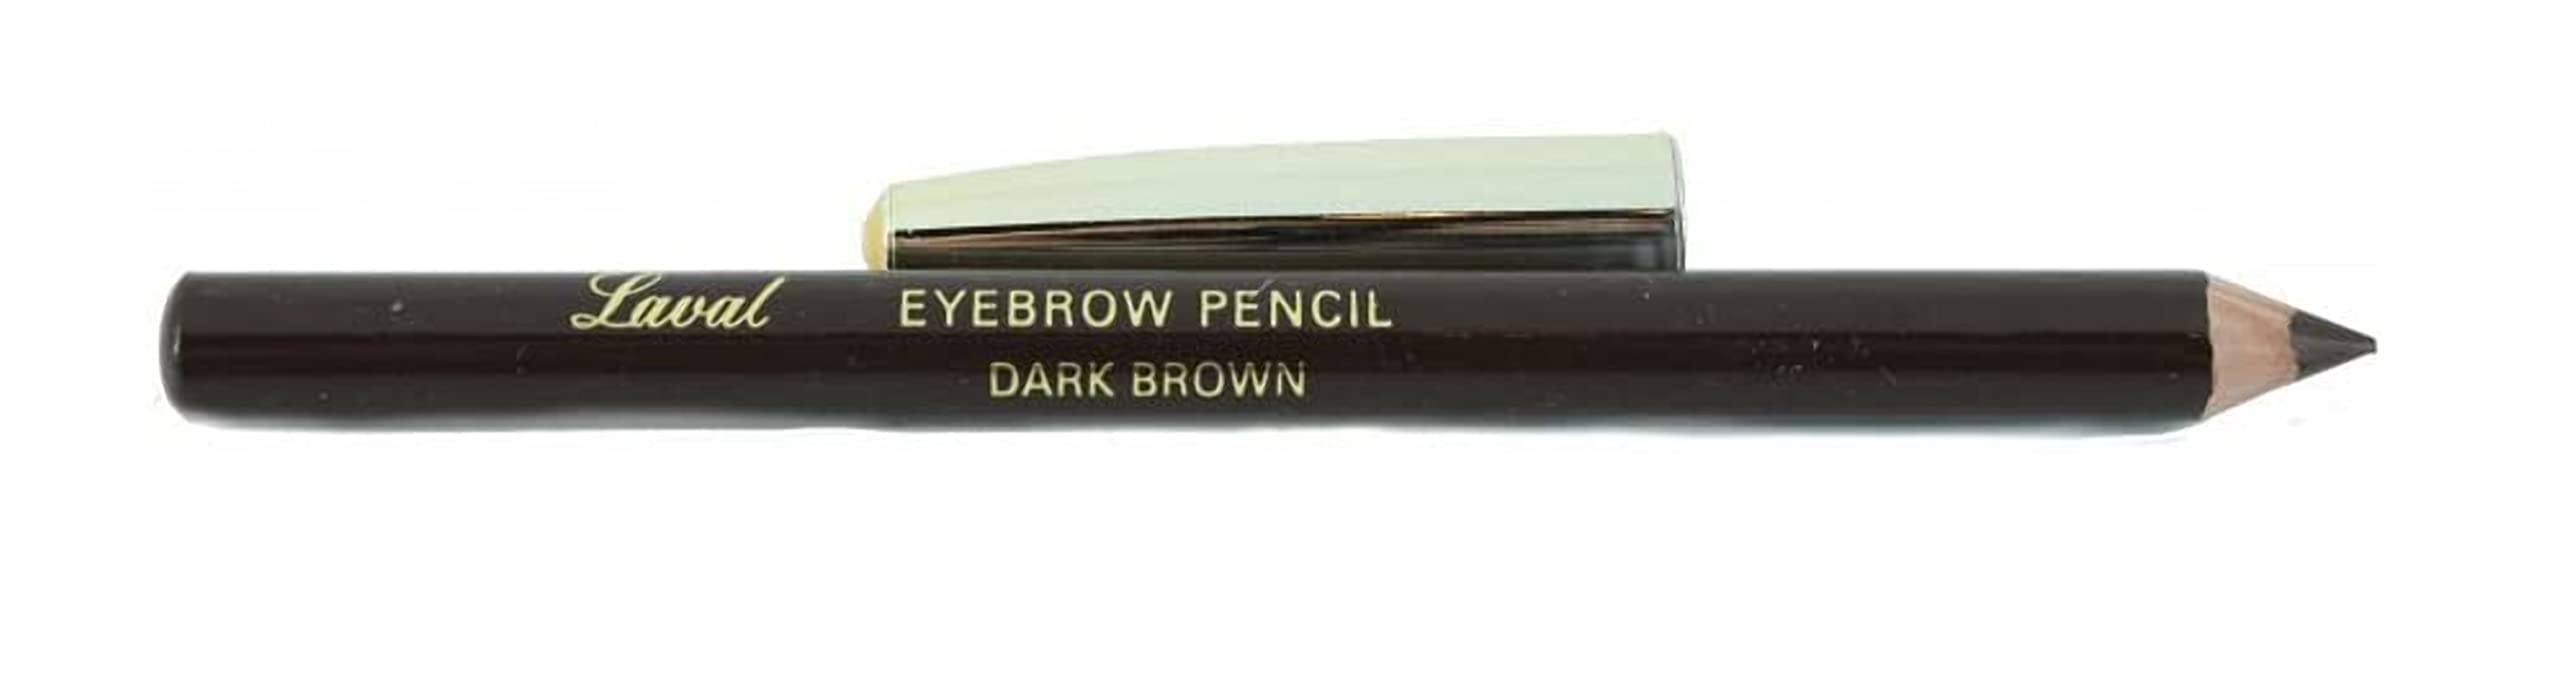 Eyebrow pencil Dark Brown